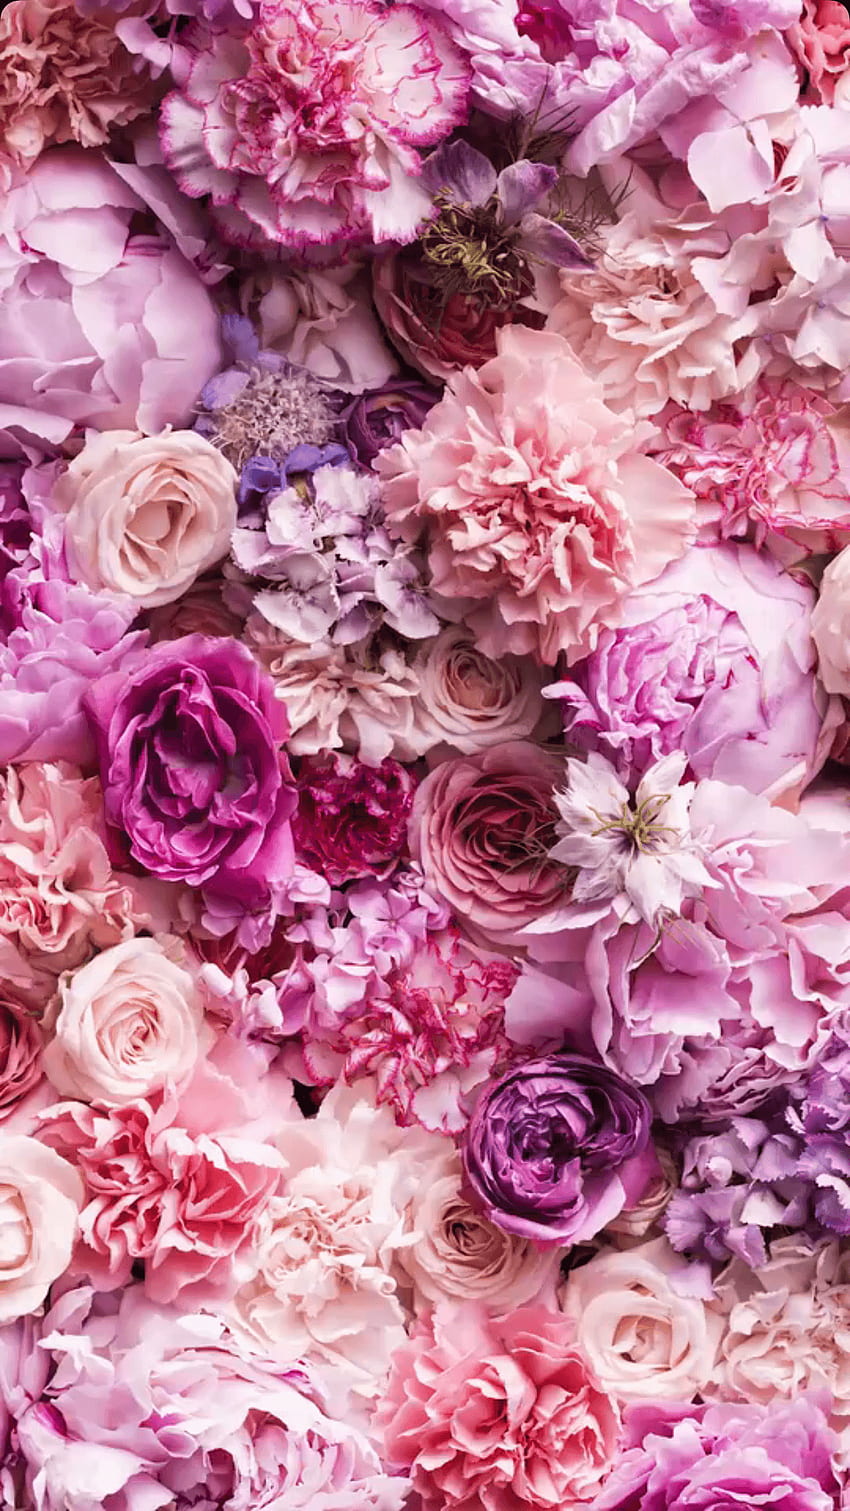 Hoa vintage mang đến sự quyến rũ và nữ tính cho bất cứ không gian nào. Sự kết hợp của các màu sắc nhẹ nhàng và hình ảnh hoa cổ điển sẽ giúp bạn có một trải nghiệm thật đặc biệt.